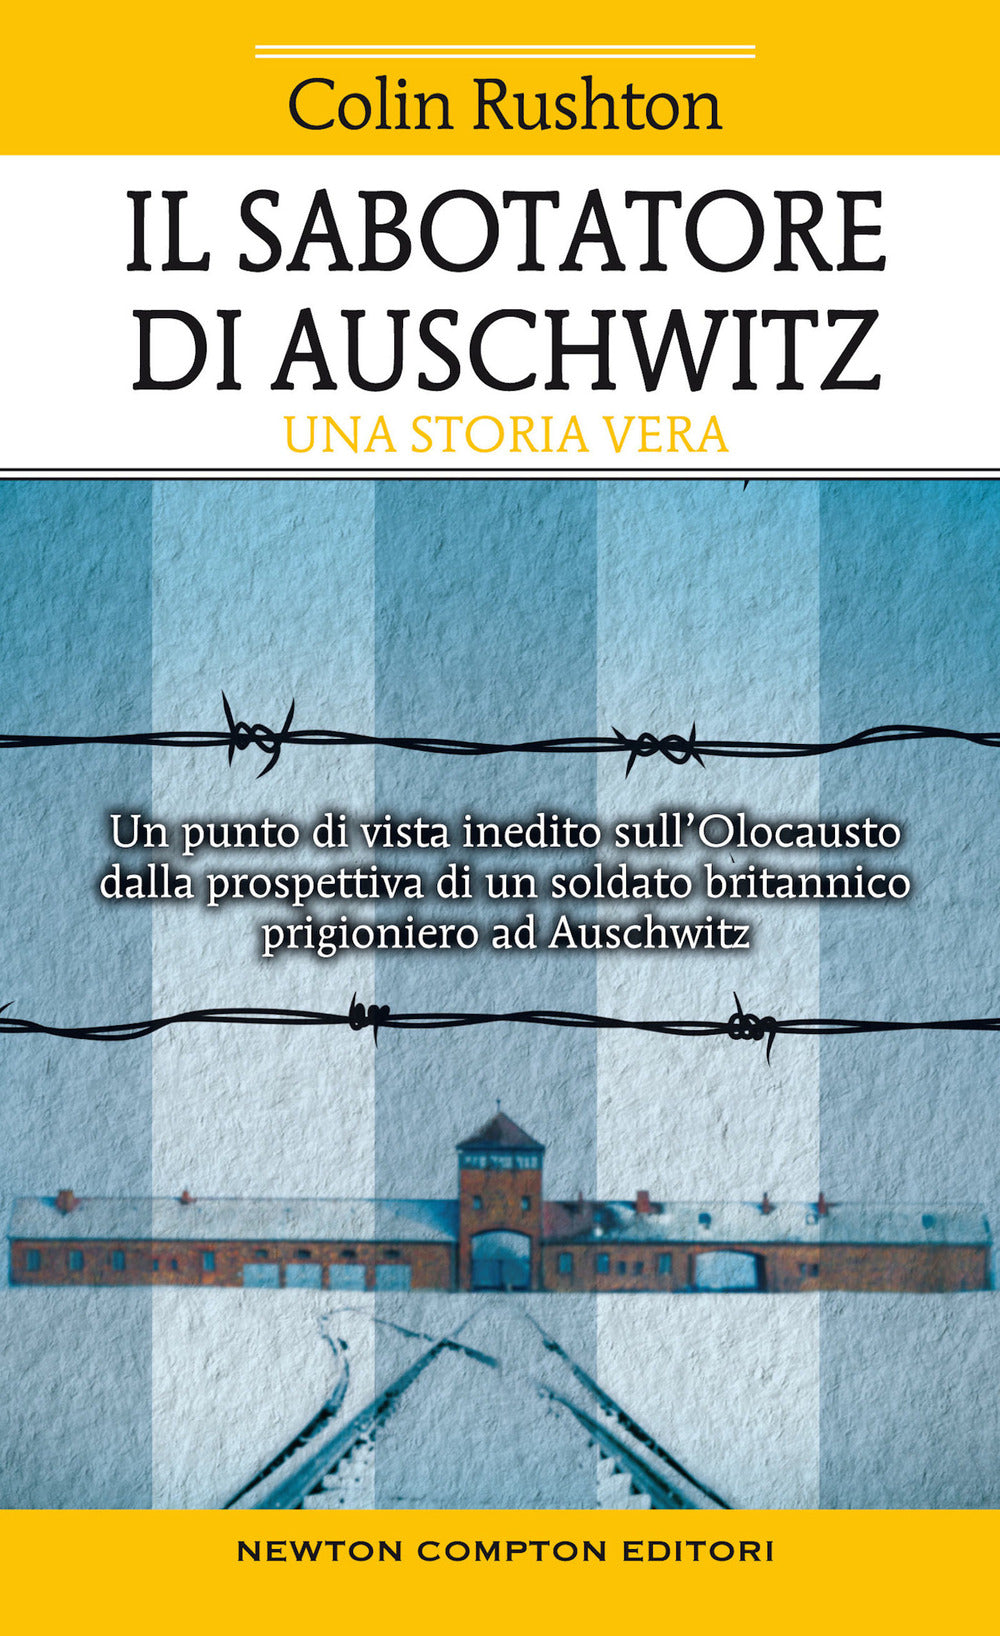 Il sabotatore di Auschwitz. Un punto di vista inedito sull'Olocausto dalla prospettiva di un soldato britannico prigioniero ad Auschwitz.